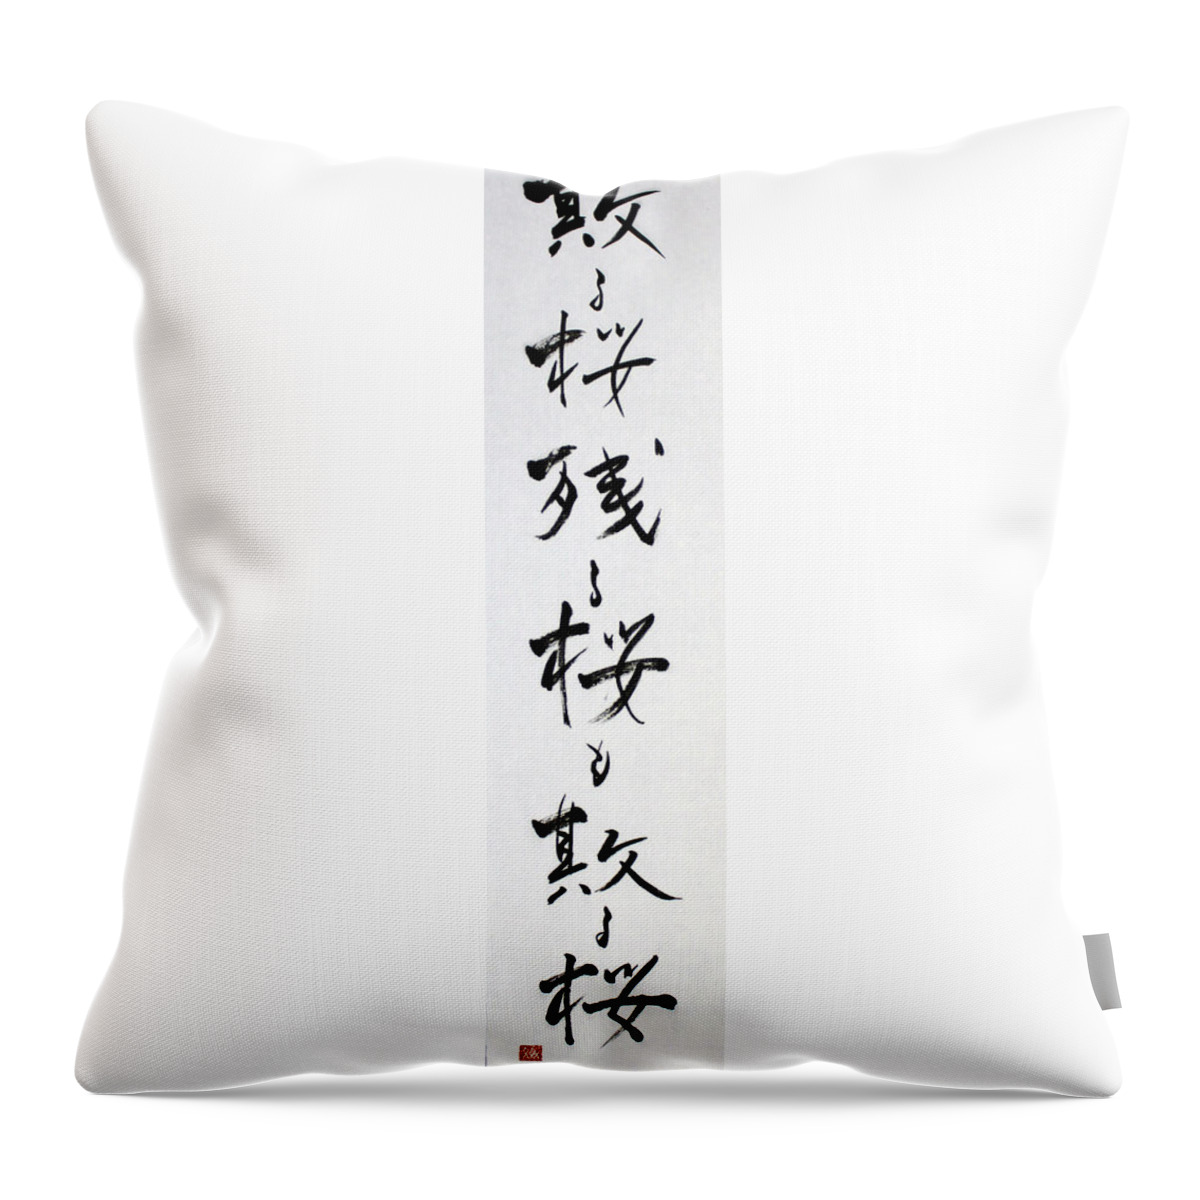 Calligraphy Throw Pillow featuring the painting Chirusakra the Last Haiku of Ryokan 14060018FY by Fumiyo Yoshikawa